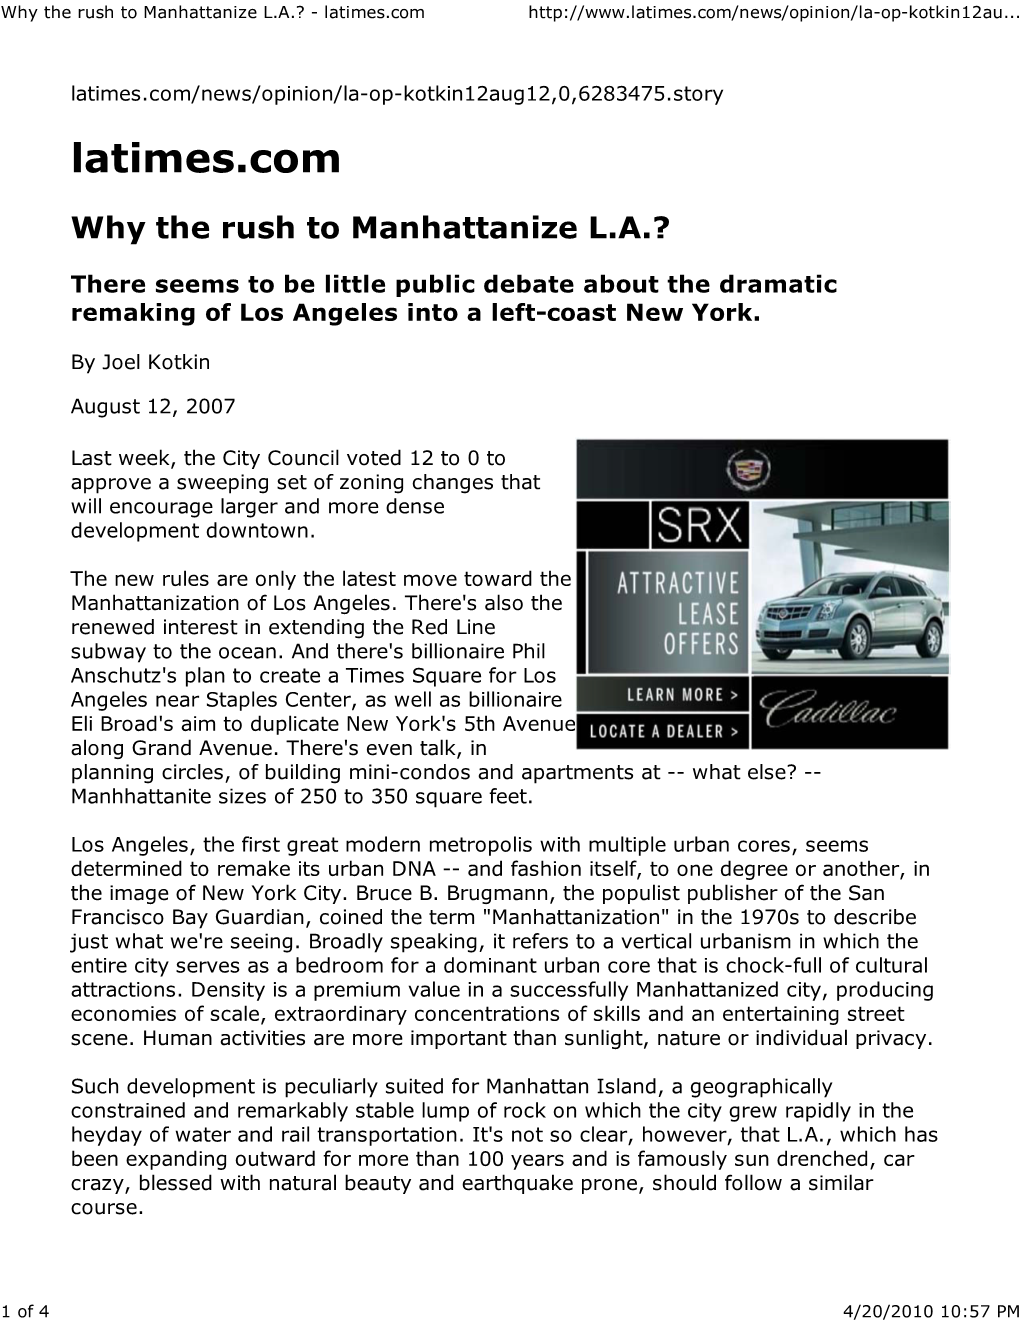 Why the Rush to Manhattanize L.A.? - Latimes.Com